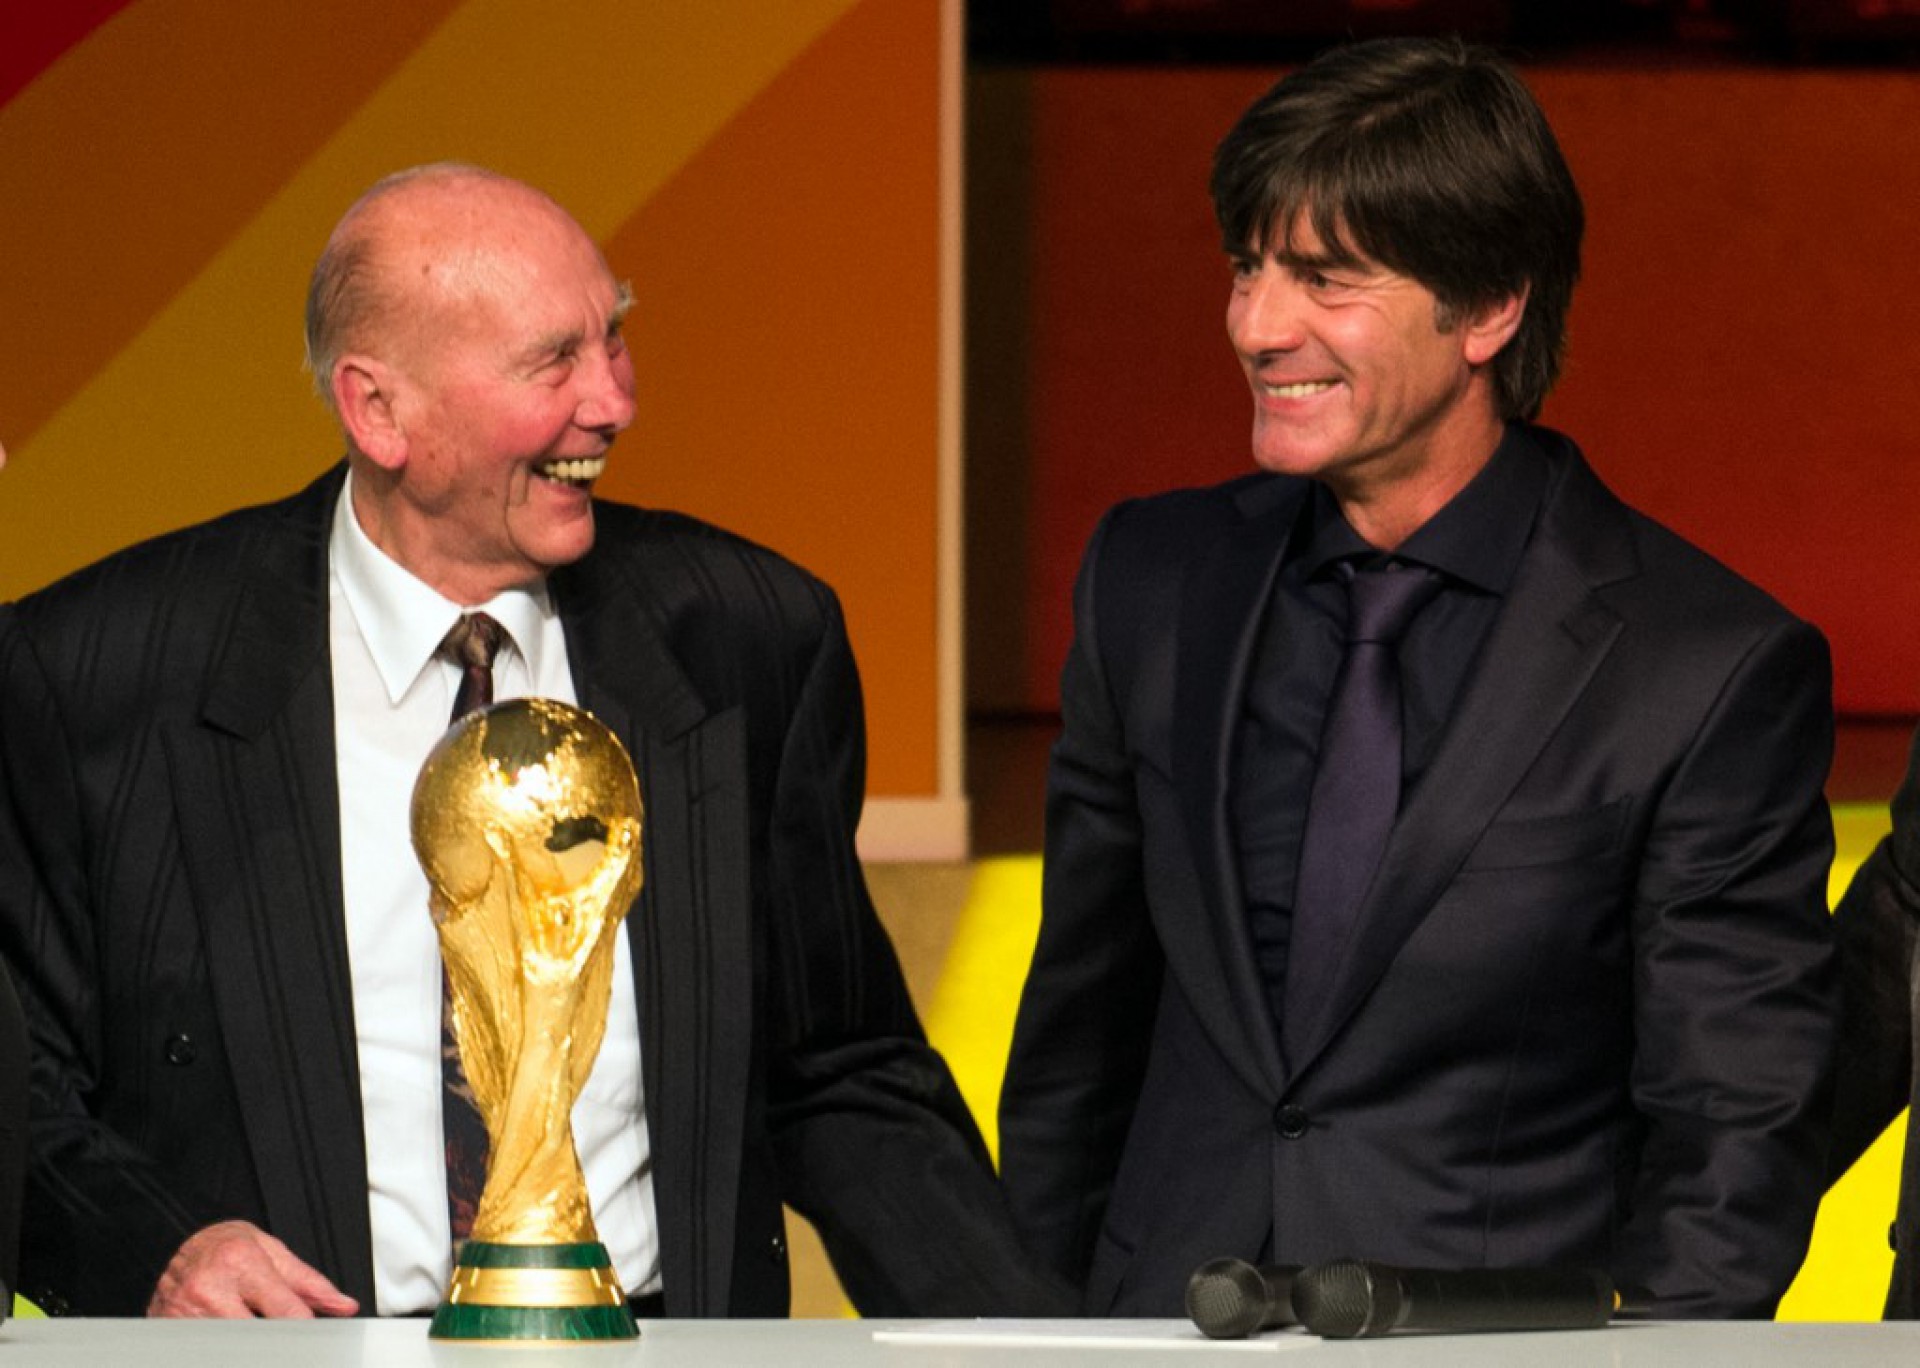 (ARQUIVOS) Nesta foto de arquivo tirada em 23 de outubro de 2015, o então técnico da Alemanha Joachim Löw (R) está ao lado do ex-vencedor da Copa do Mundo da Alemanha Horst Eckel (Foto: BERND THISSEN / DPA / AFP)